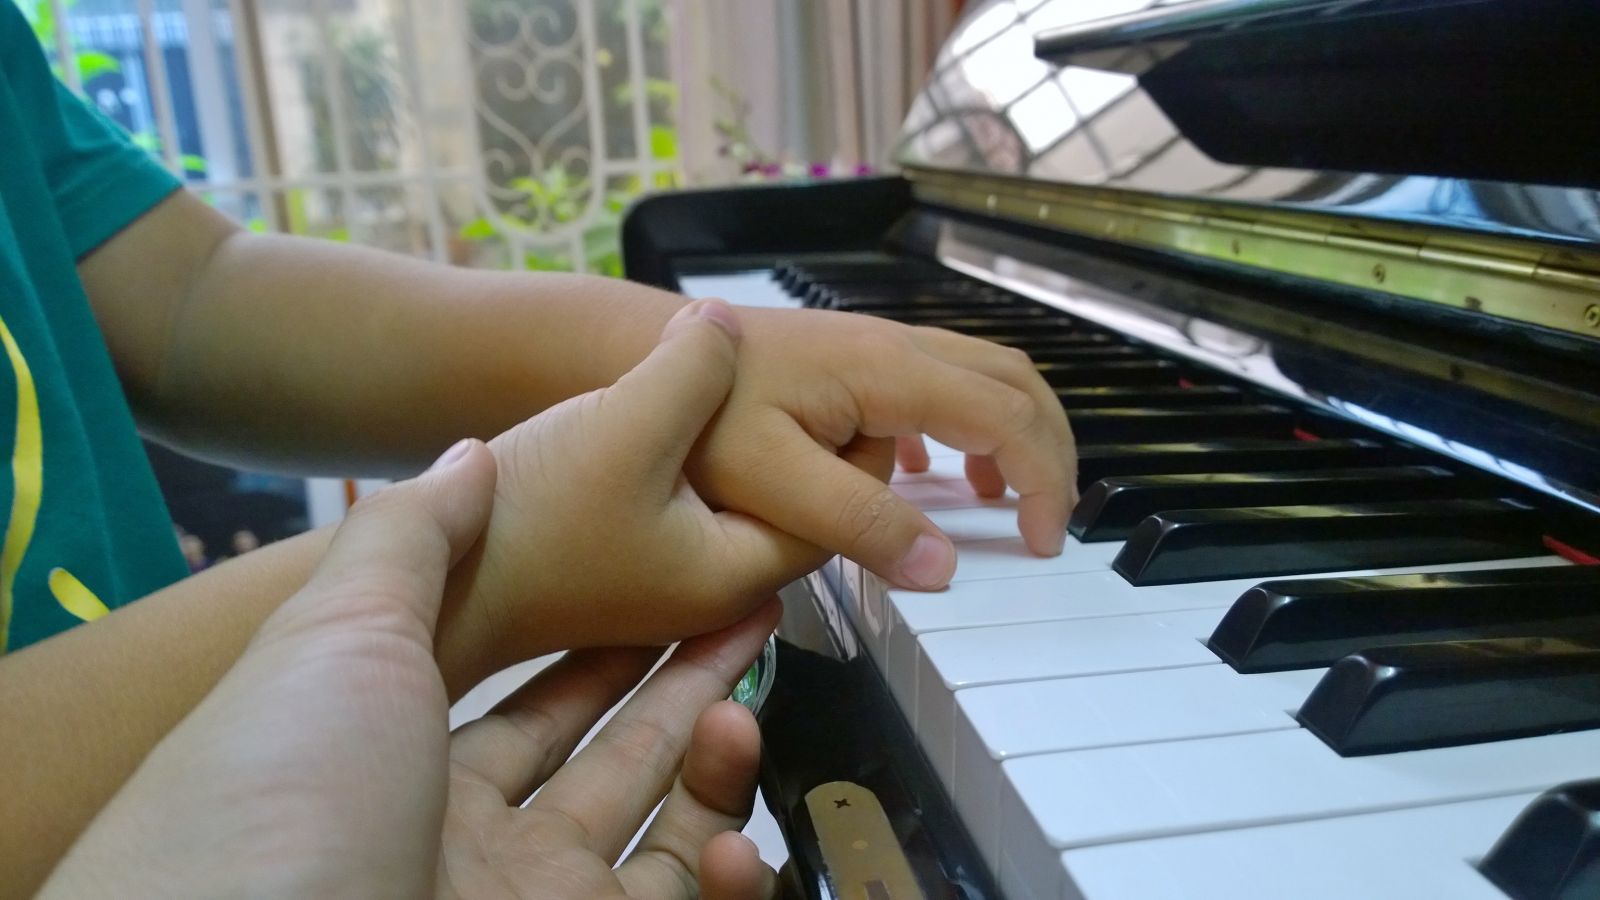 NÊN HỌC ĐÀN PIANO ONLINE HAY HỌC ĐÀN PIANO TRỰC TIẾP